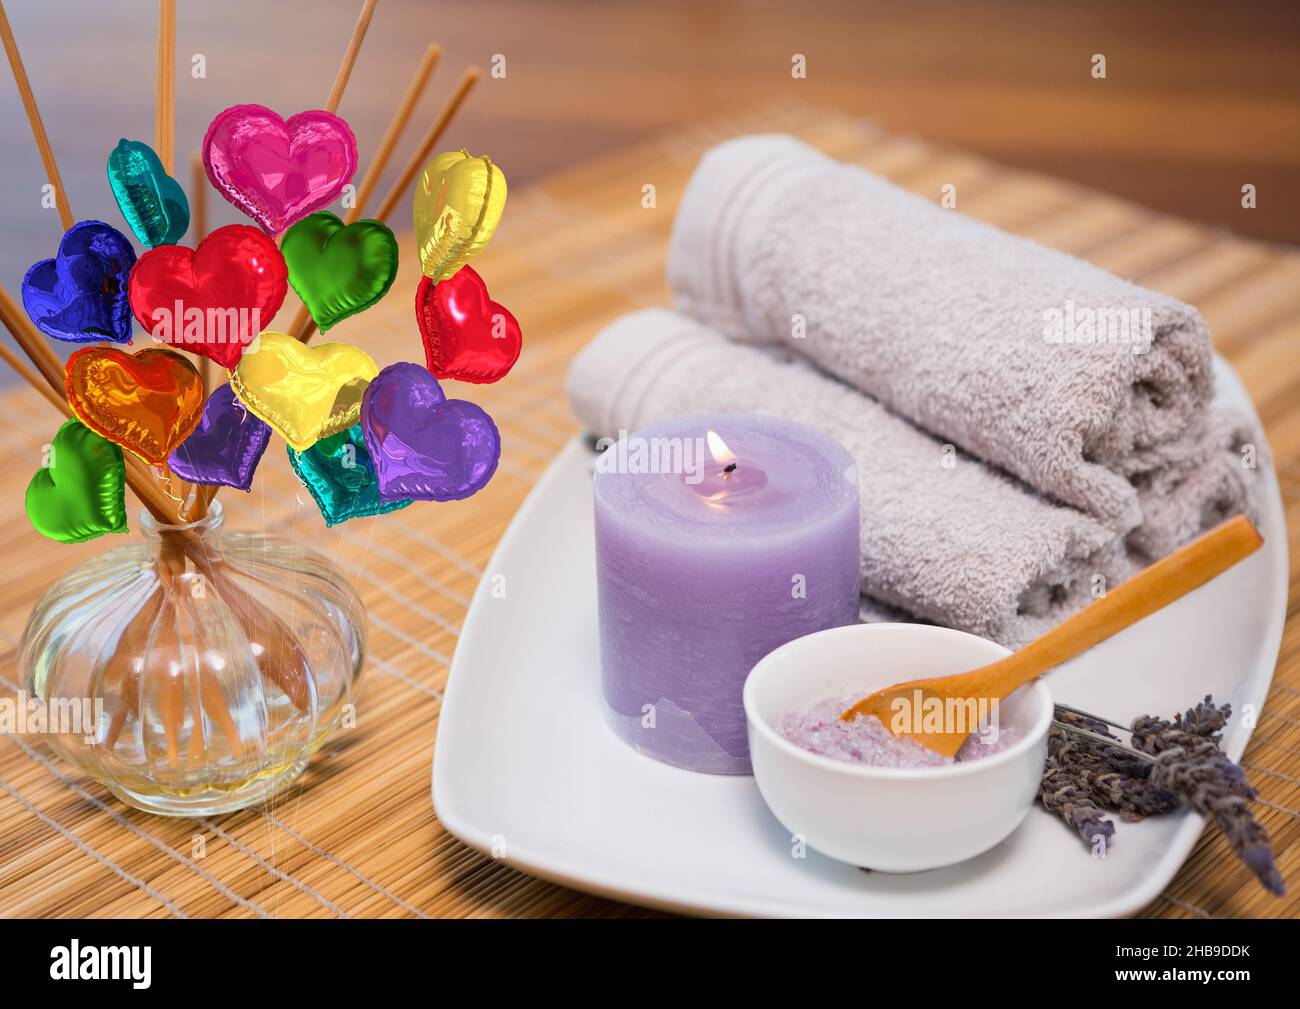 Immagine composita di palloncini colorati a forma di cuore contro asciugamano, candela e sale da bagno Foto Stock